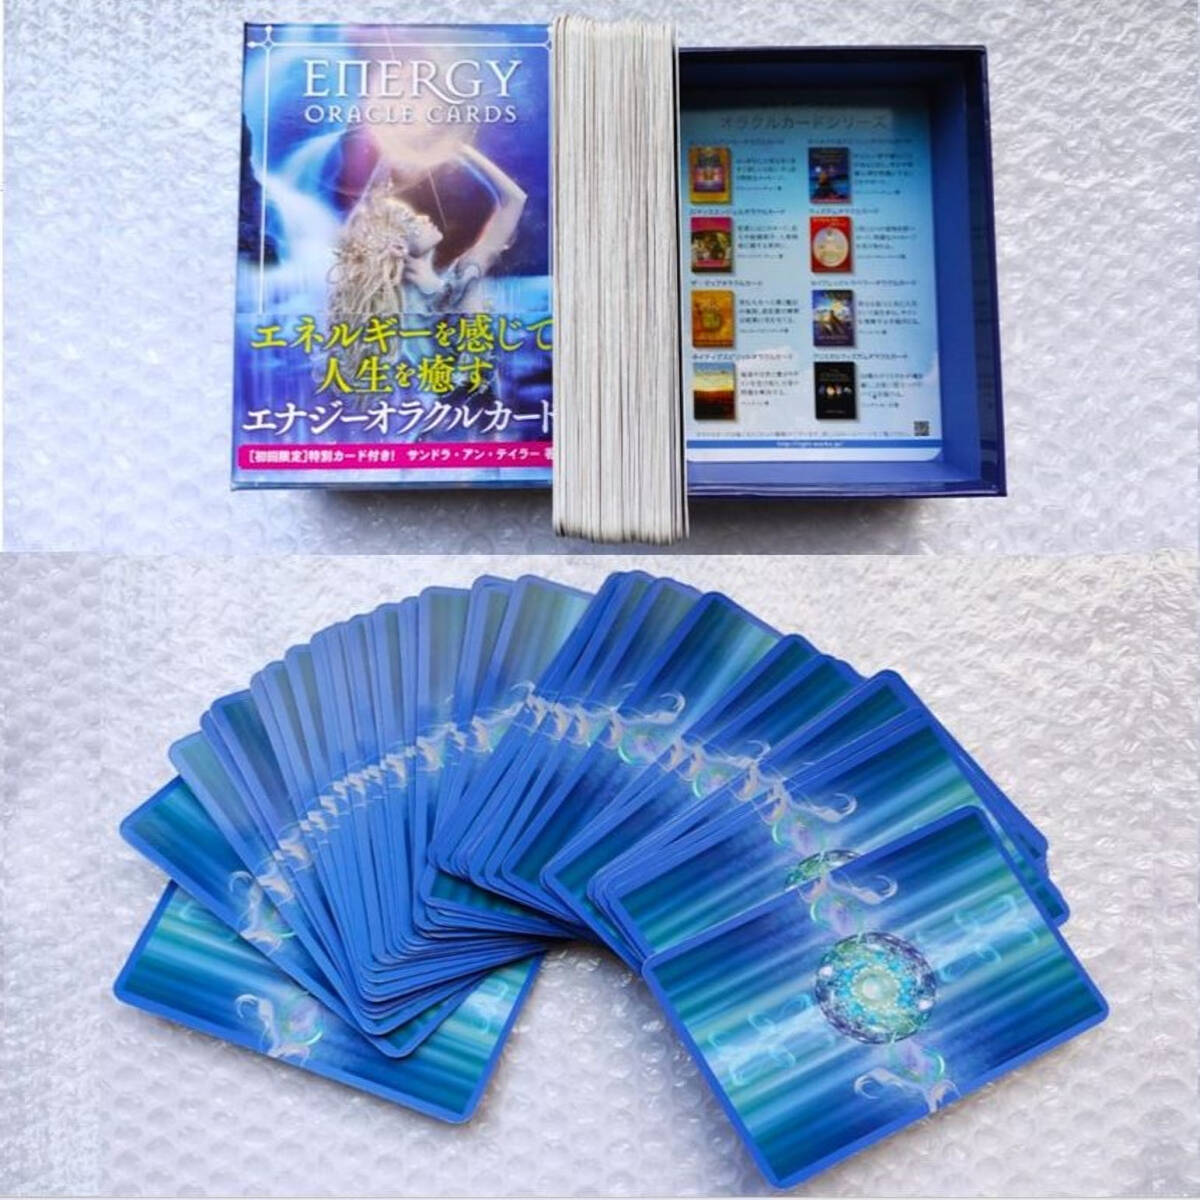 エナジーオラクルカード 初回限定特別カードエネルギーワークカード付き& ルナファクトリー ビビッドオーラバース カード 日本語解説書付_画像3